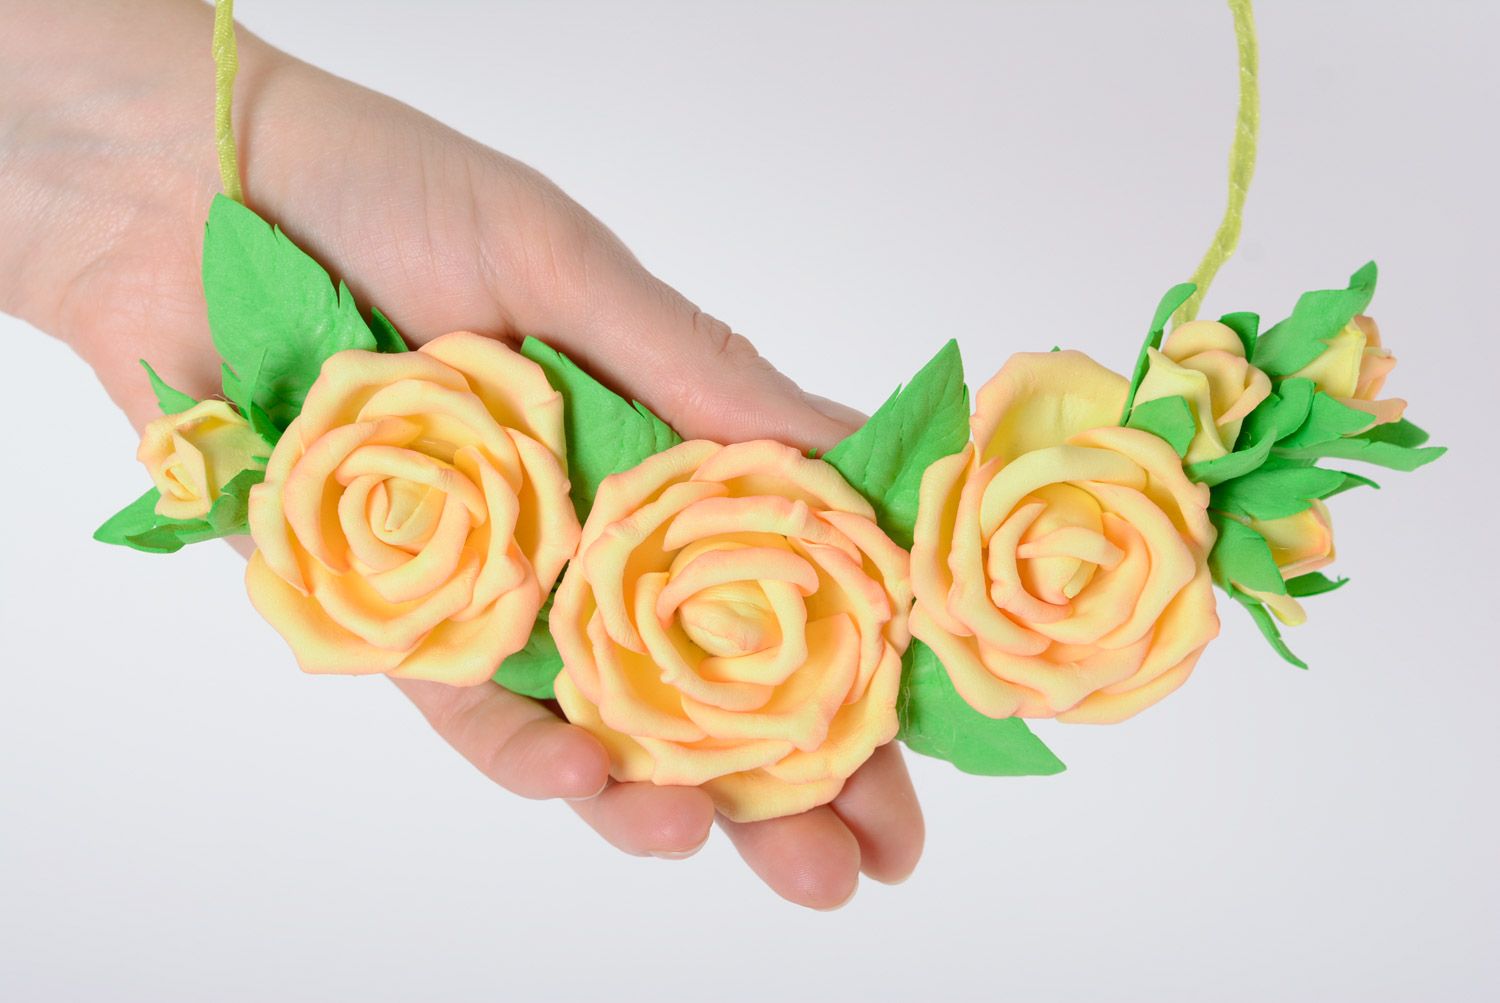 Колье из пластичной замши ручной работы цветочное желтое в виде роз фото 3